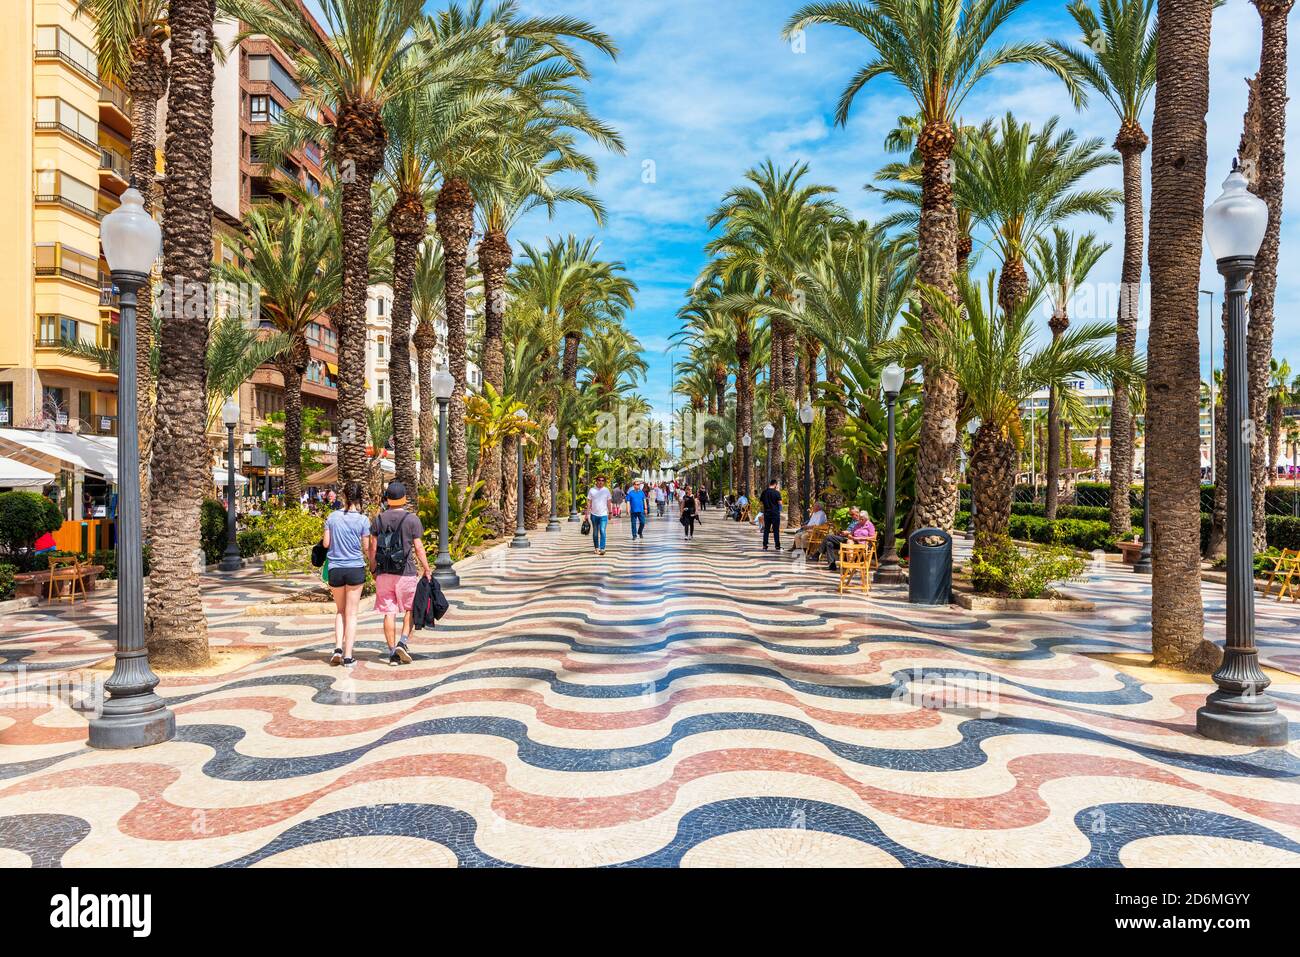 Personnes marchant sur une promenade bordée de palmiers à Alicante, en Espagne. Alicante est une ville située dans le sud-est de la péninsule ibérique. Banque D'Images